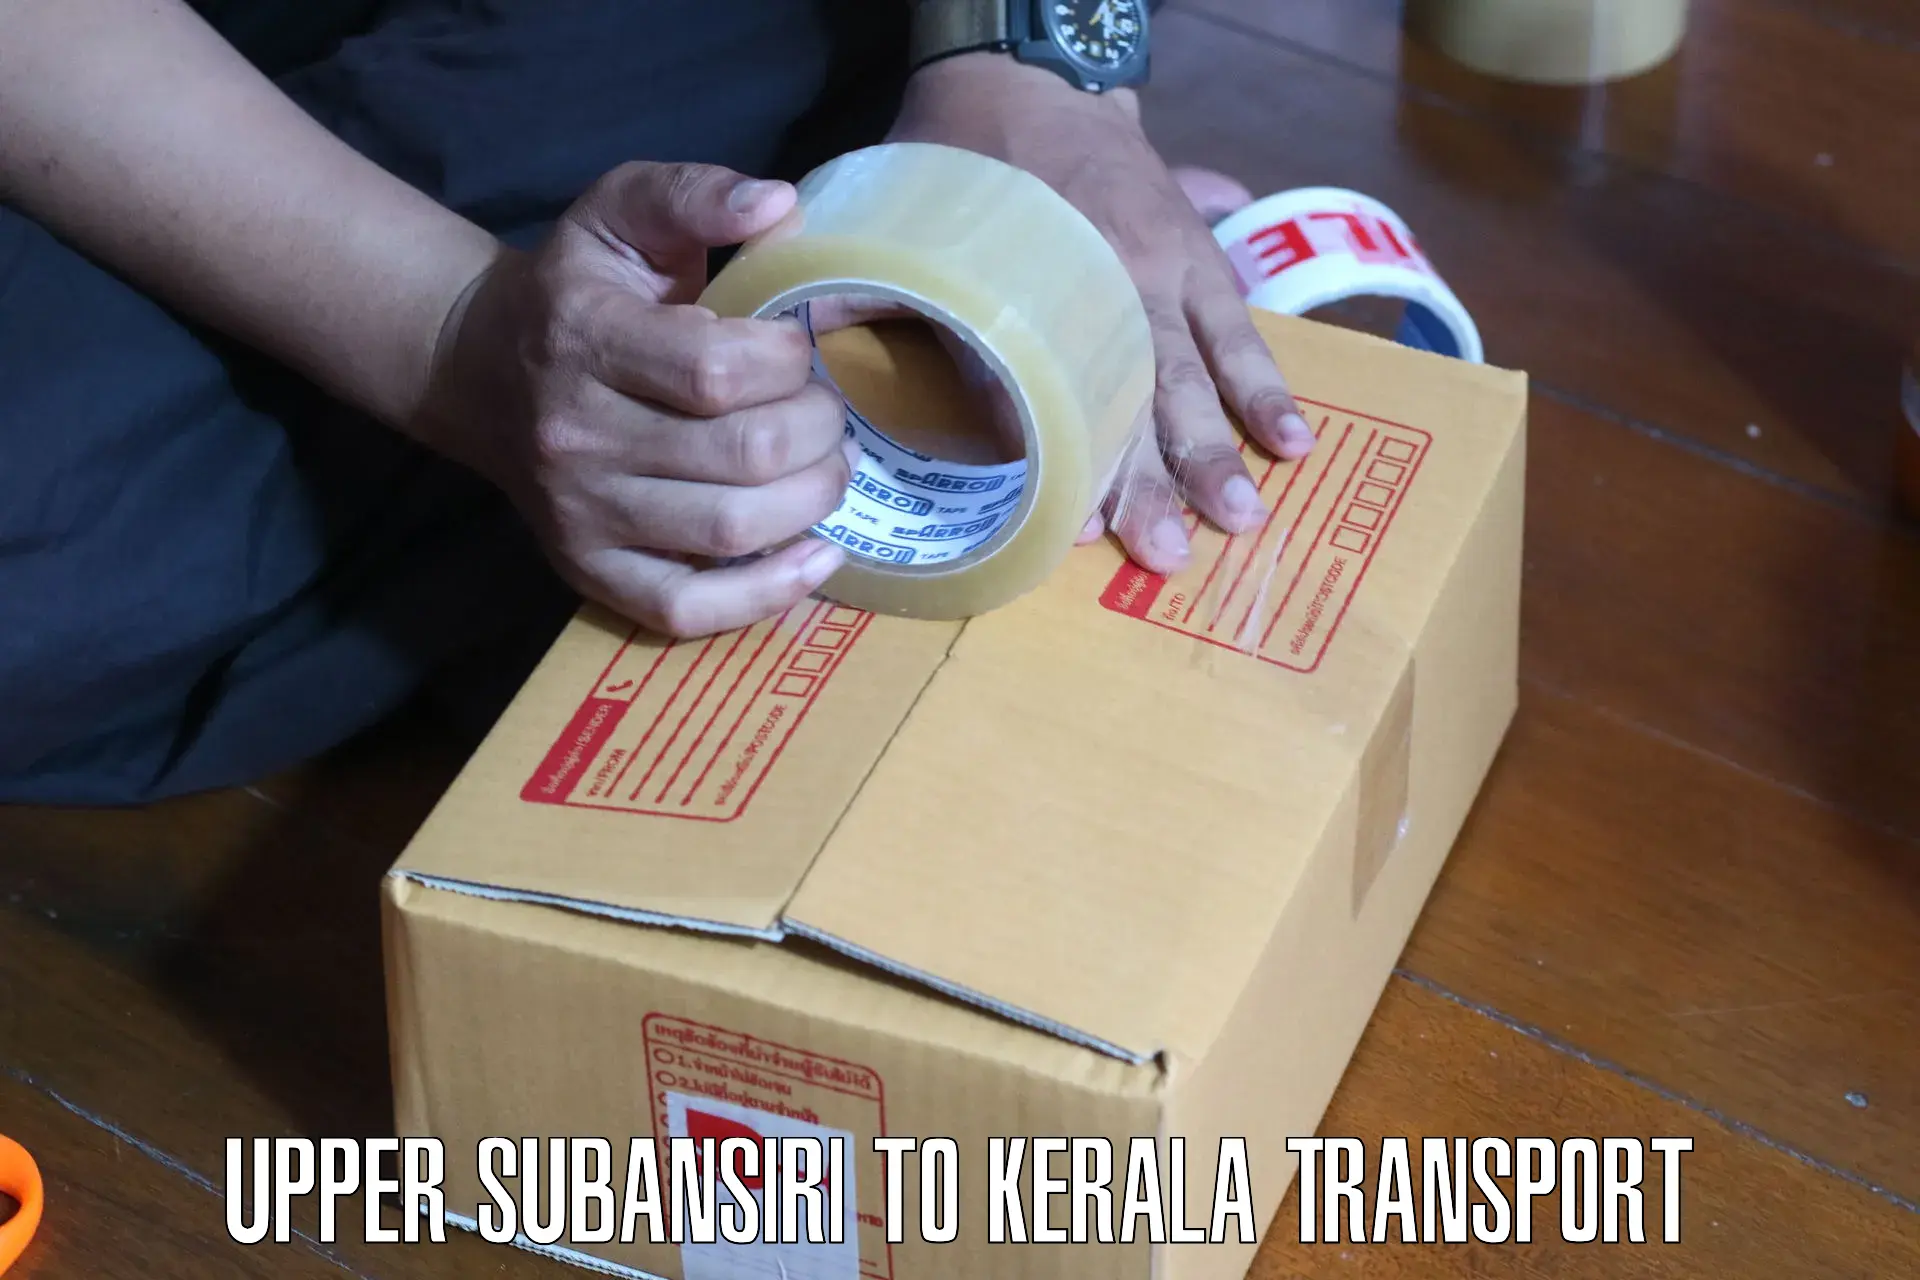 Shipping partner Upper Subansiri to Kerala